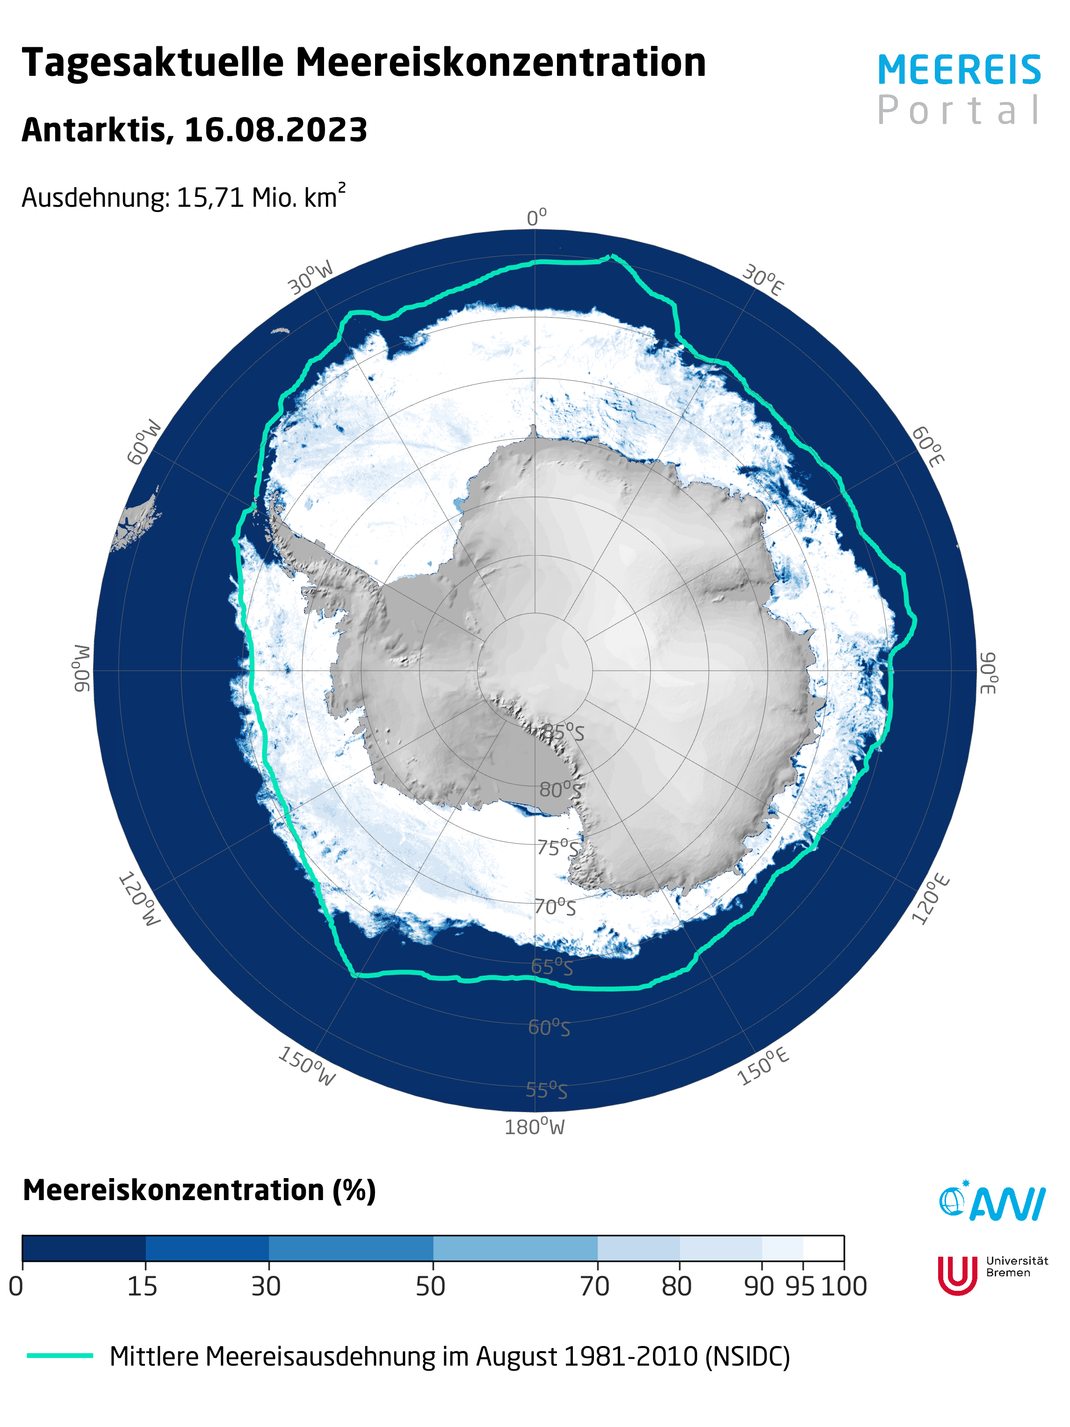 Die Grafik des Meereisportal zeigt, wie stark die tagesaktuelle Meereiskonzentration in der Antarktis im Vergleich zur mittleren Meereisausdehnung im August 1981 bis 2010 geschrumpft ist.